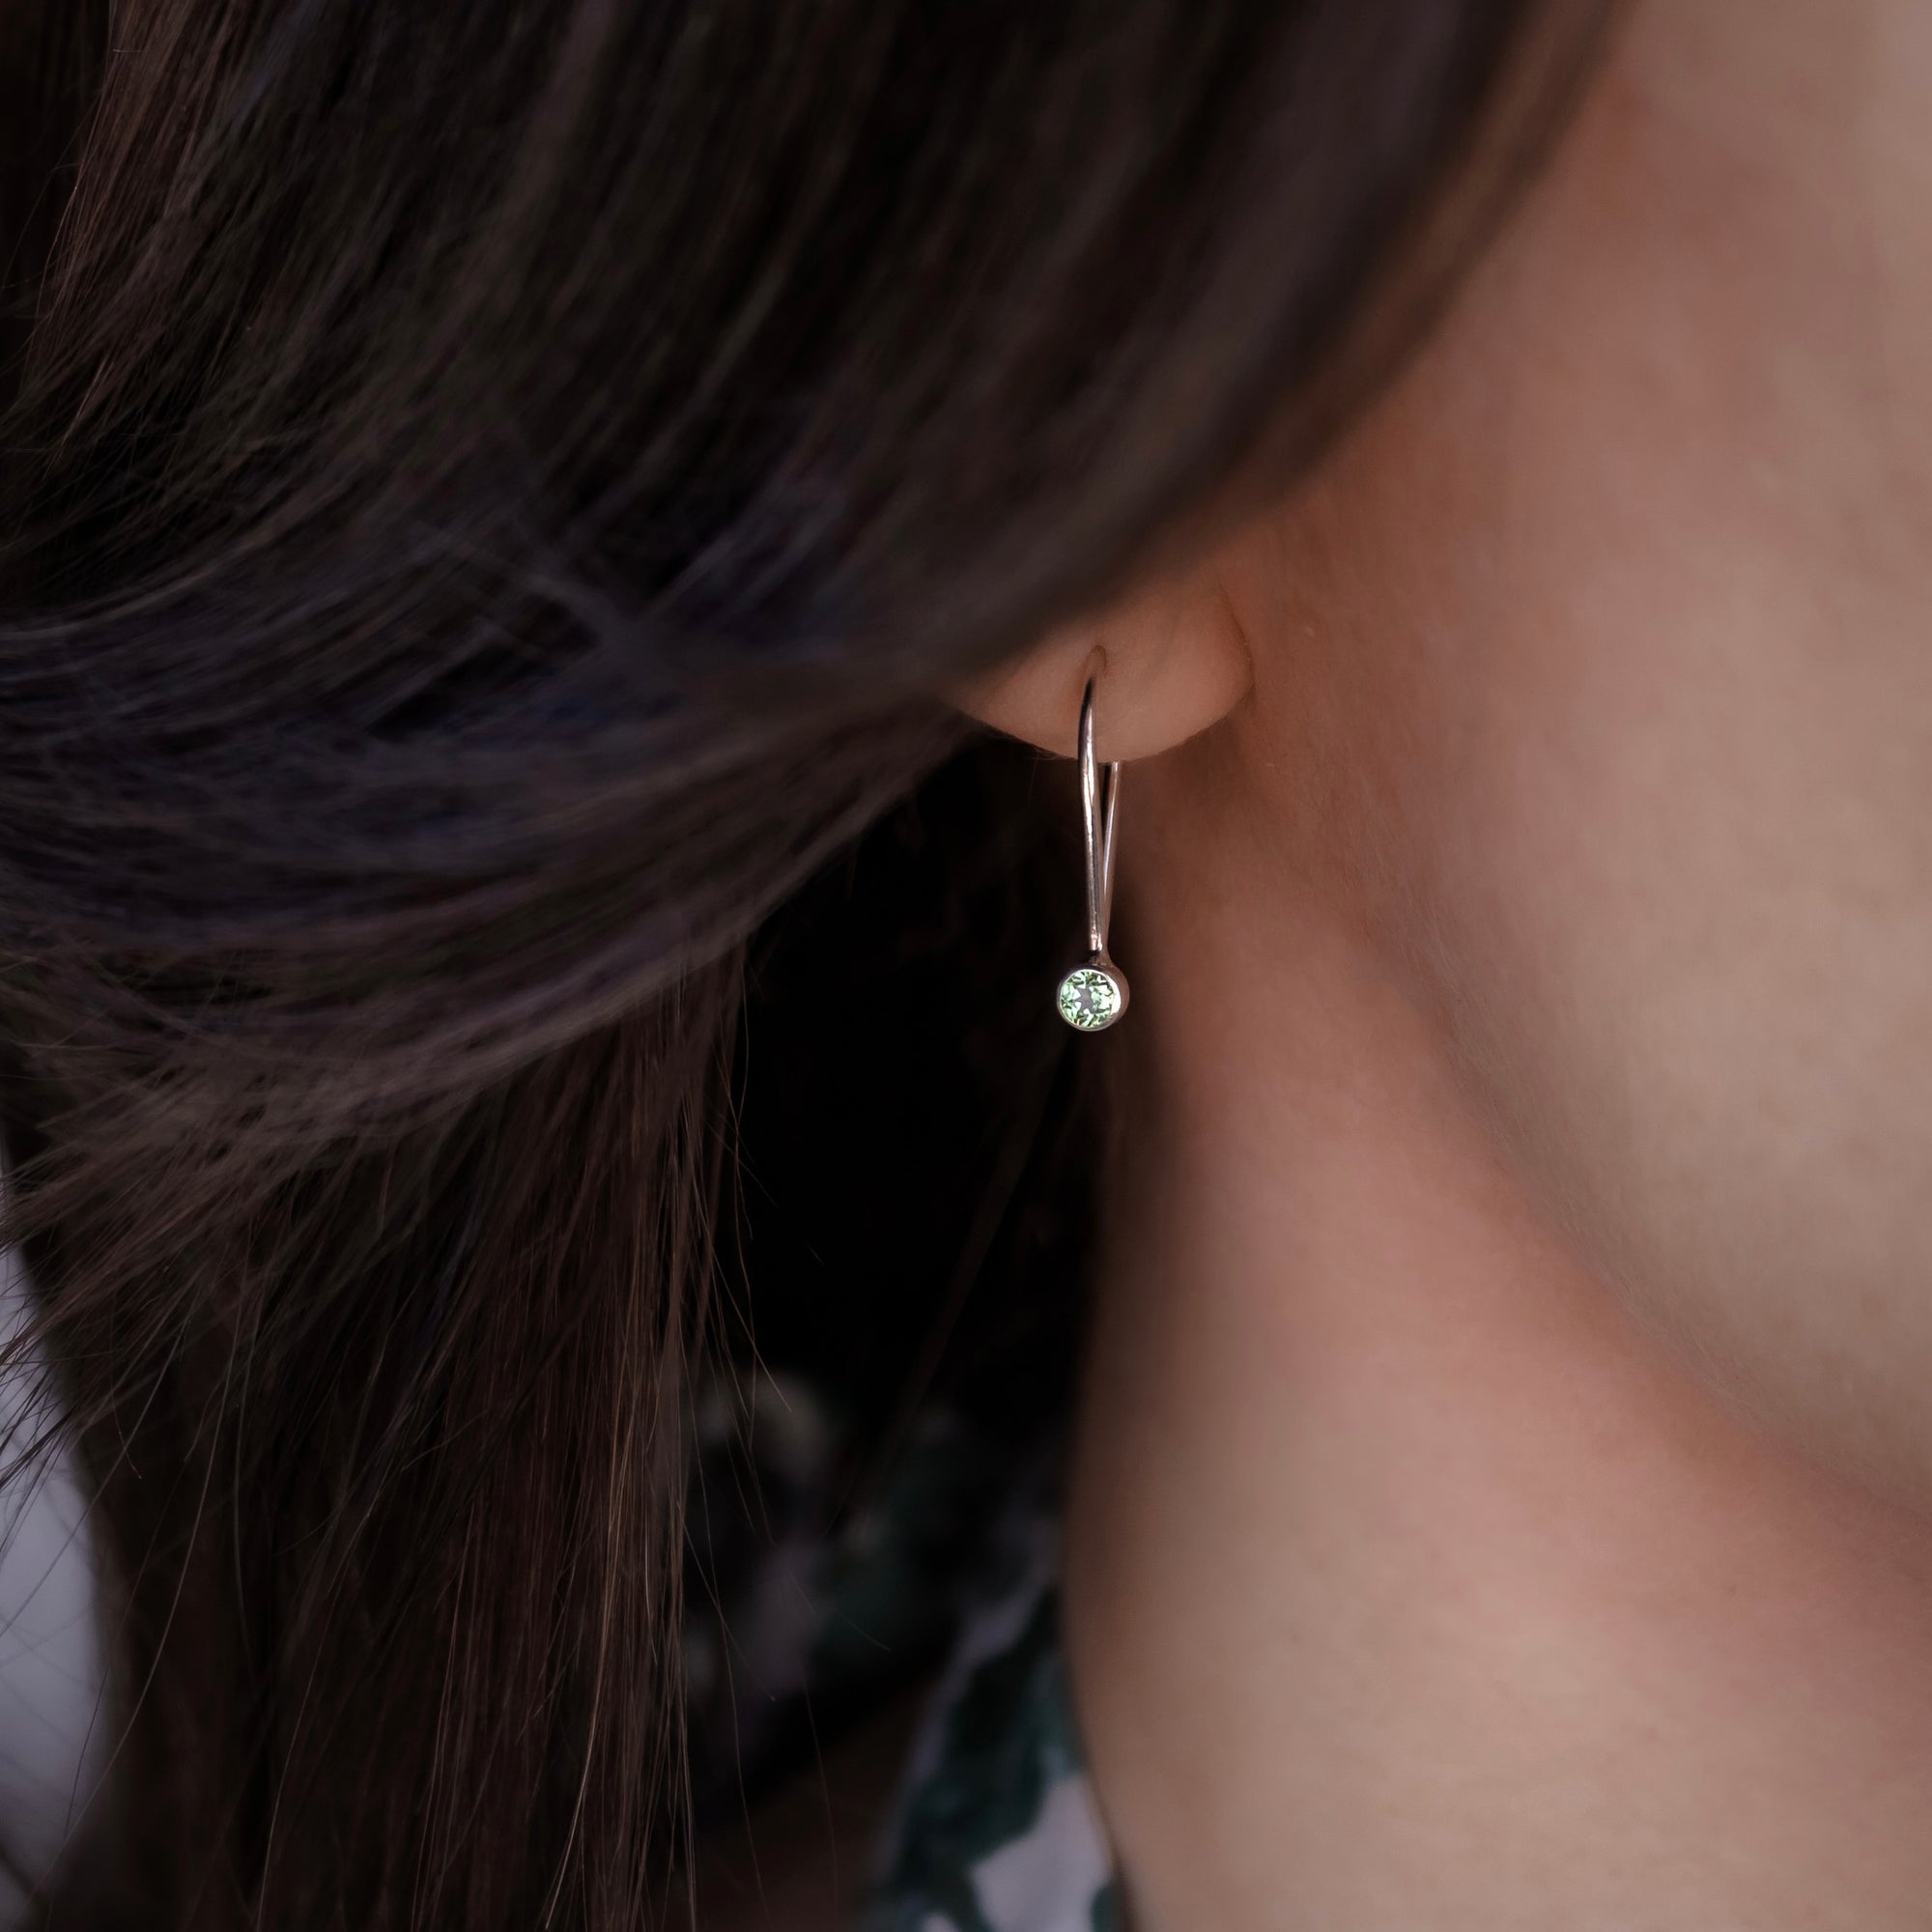 Birthstone Ear-Pins